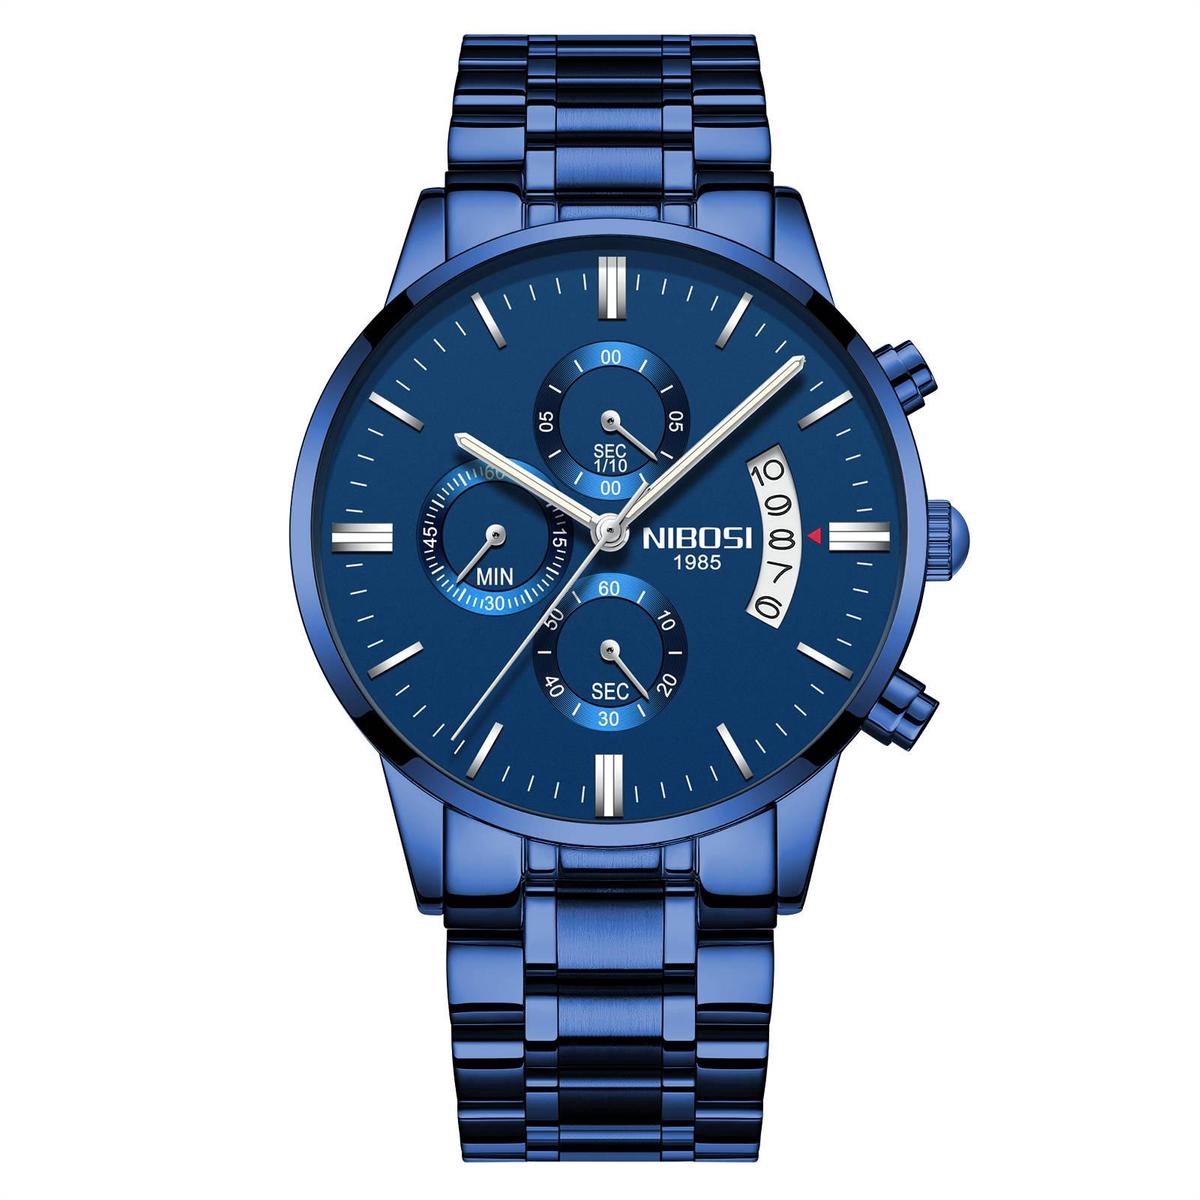 NIBOSI Horloges voor mannen - Horloge mannen – Luxe Blauw Design - Heren horloge - Ø 42 mm – Blauw - Roestvrij Staal - Waterdicht tot 3 bar - Chronograaf - Geschenkset met verstelbare pin